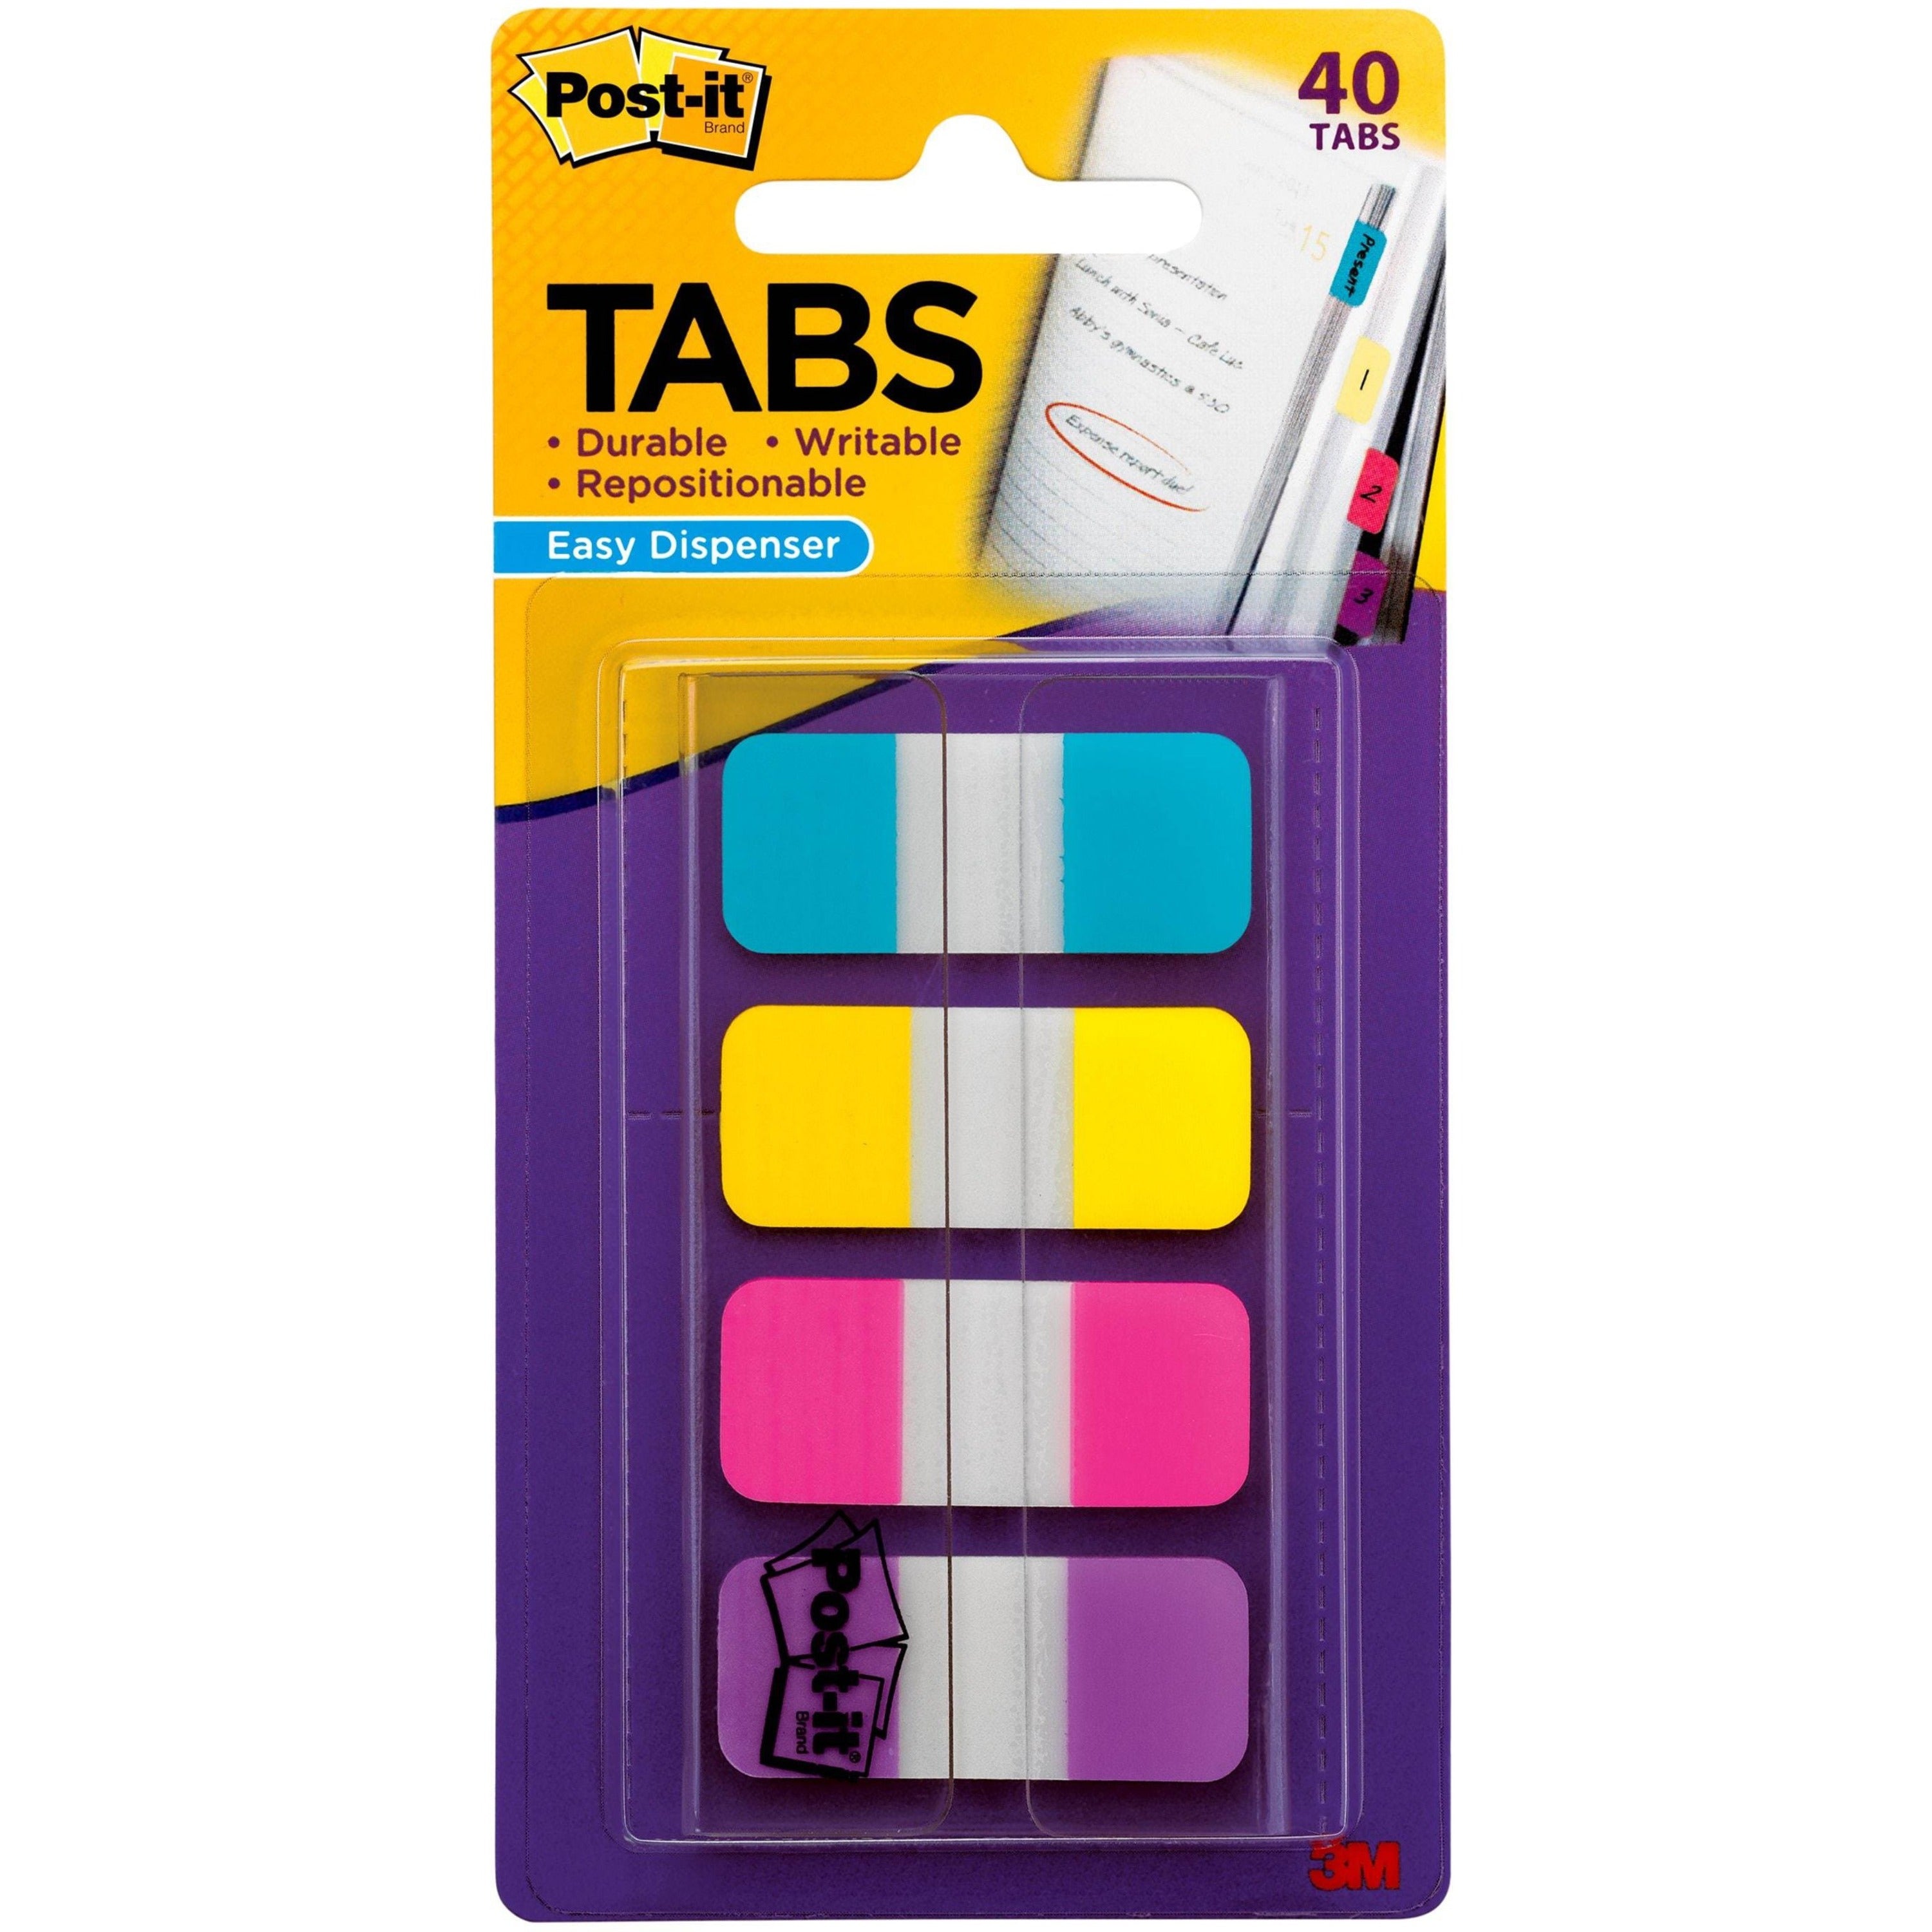 post-it-easy-dispenser-tabs-40-tabs063-tab-width-self-adhesive-pink-purple-yellow-blue-tabs-40-pack_mmm676aypv - 1